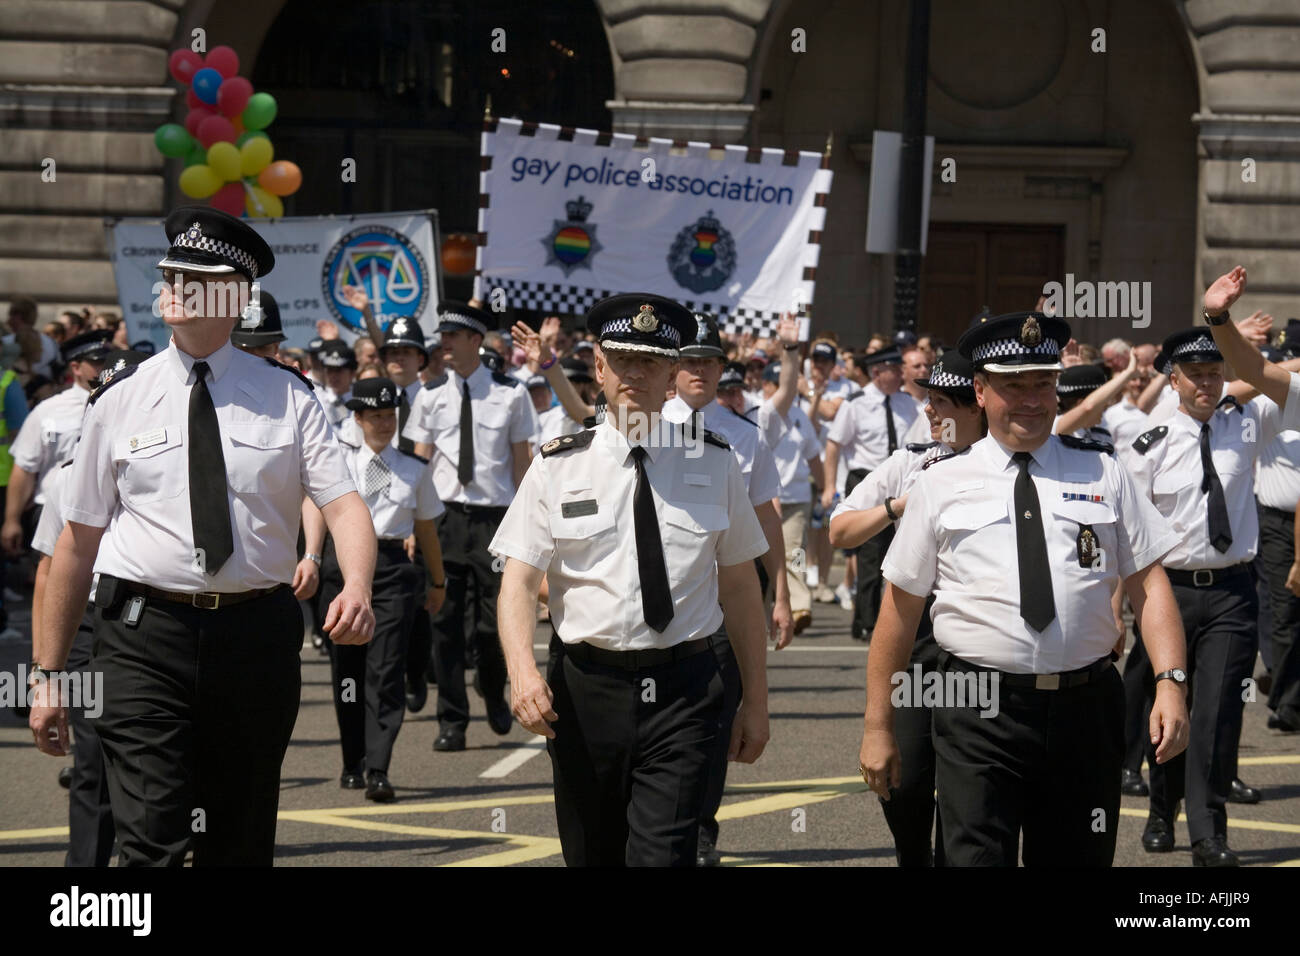 Les membres de la police gay associetion manifestent à Piccadilly Londres pendant la parade EuroPride Banque D'Images